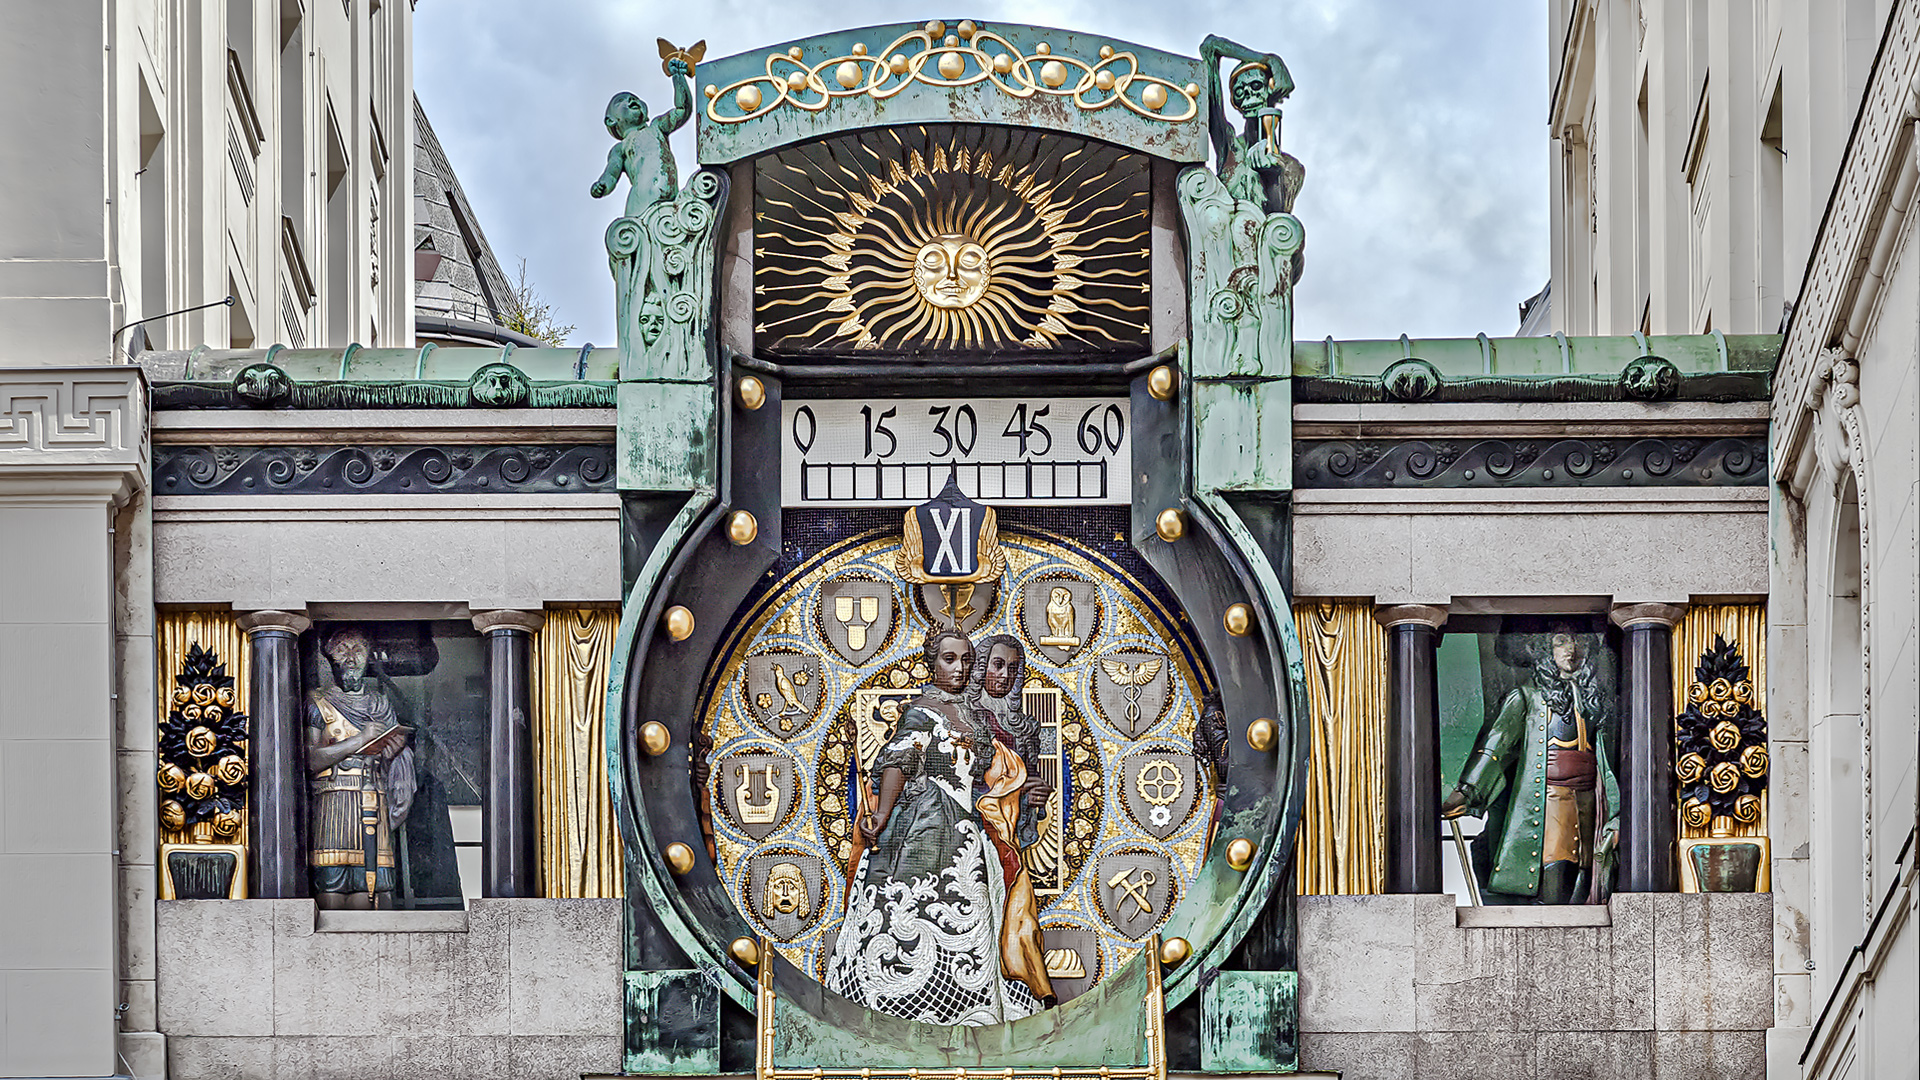 Die Ankeruhr, gebaut von Franz von Matsch zwischen 1911-1914, befindet sich am Hohen Markt 10-11, Wien, Österreich.